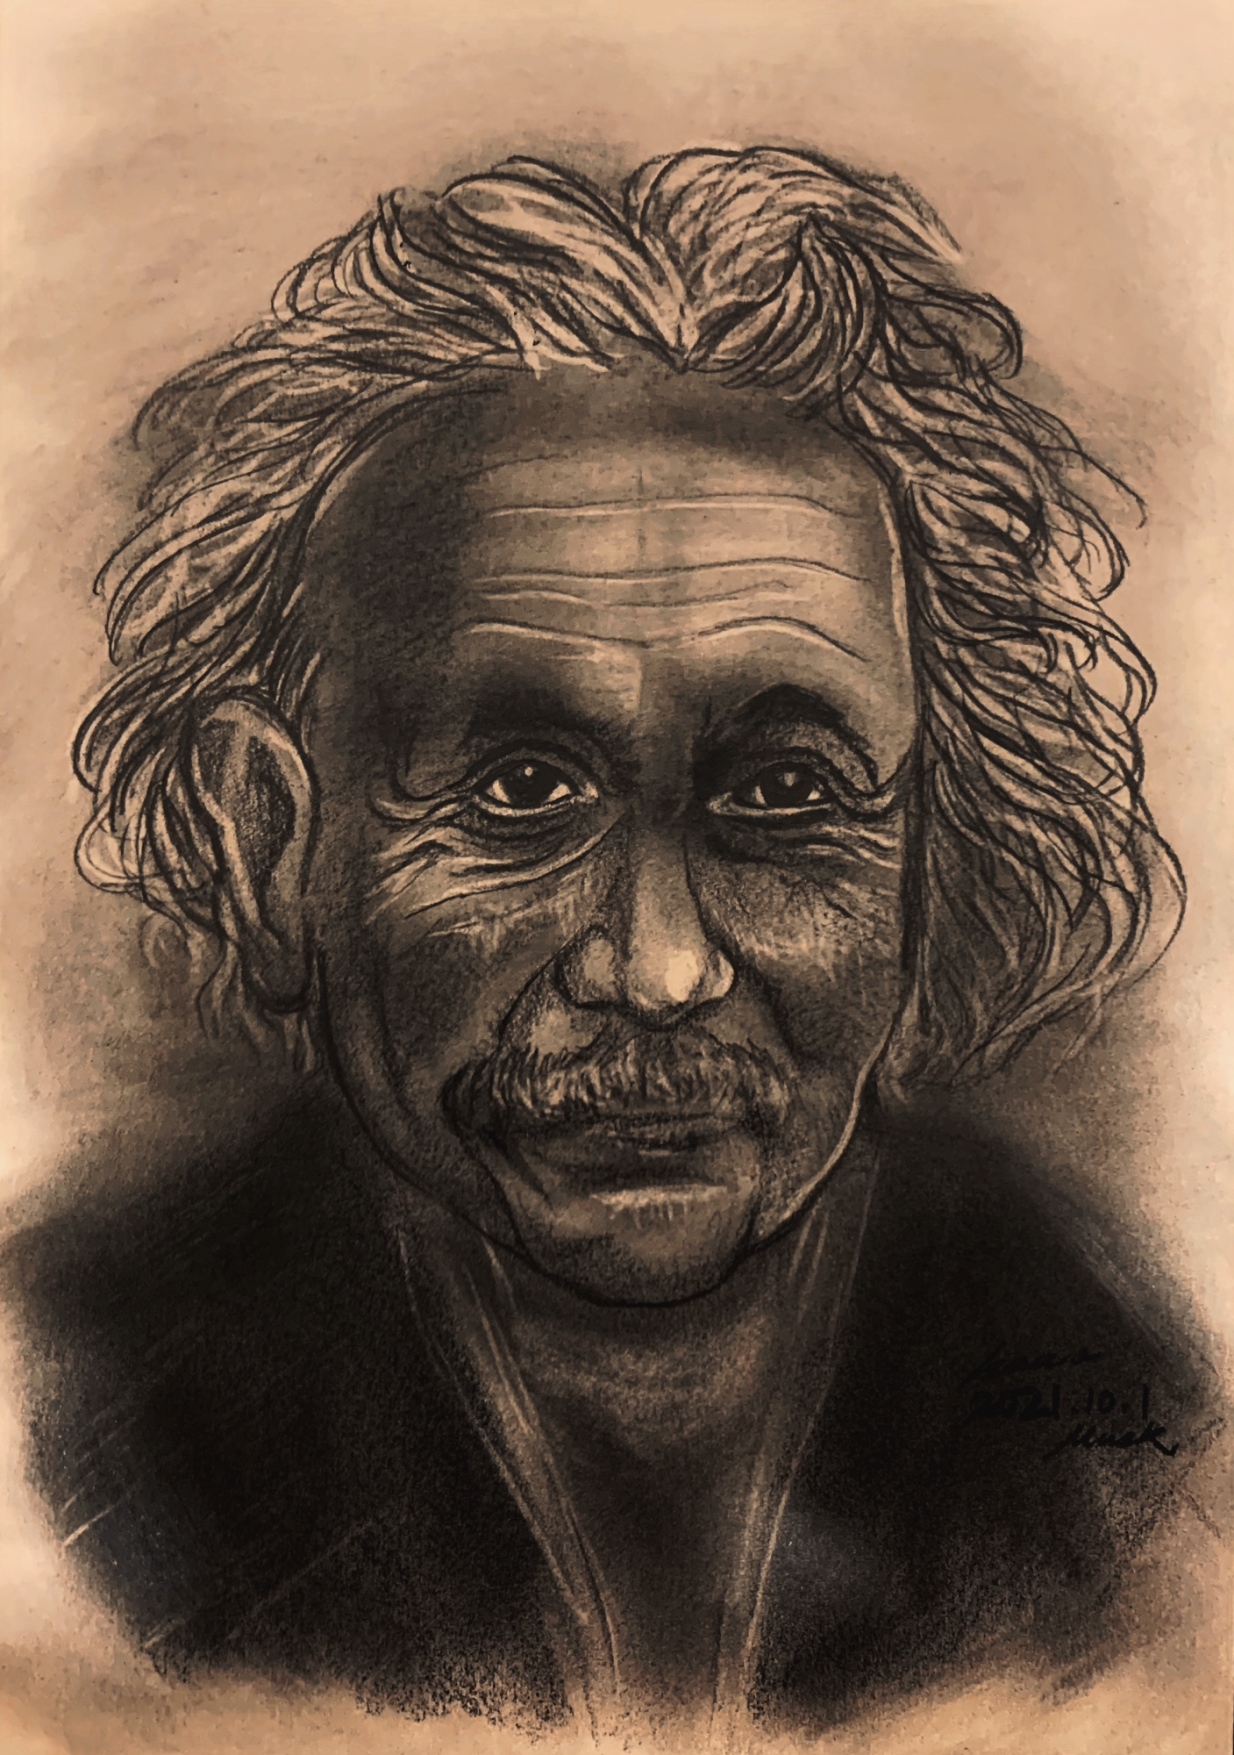 【鉛筆】Albert Einstein 愛因斯坦 by zK.jpg